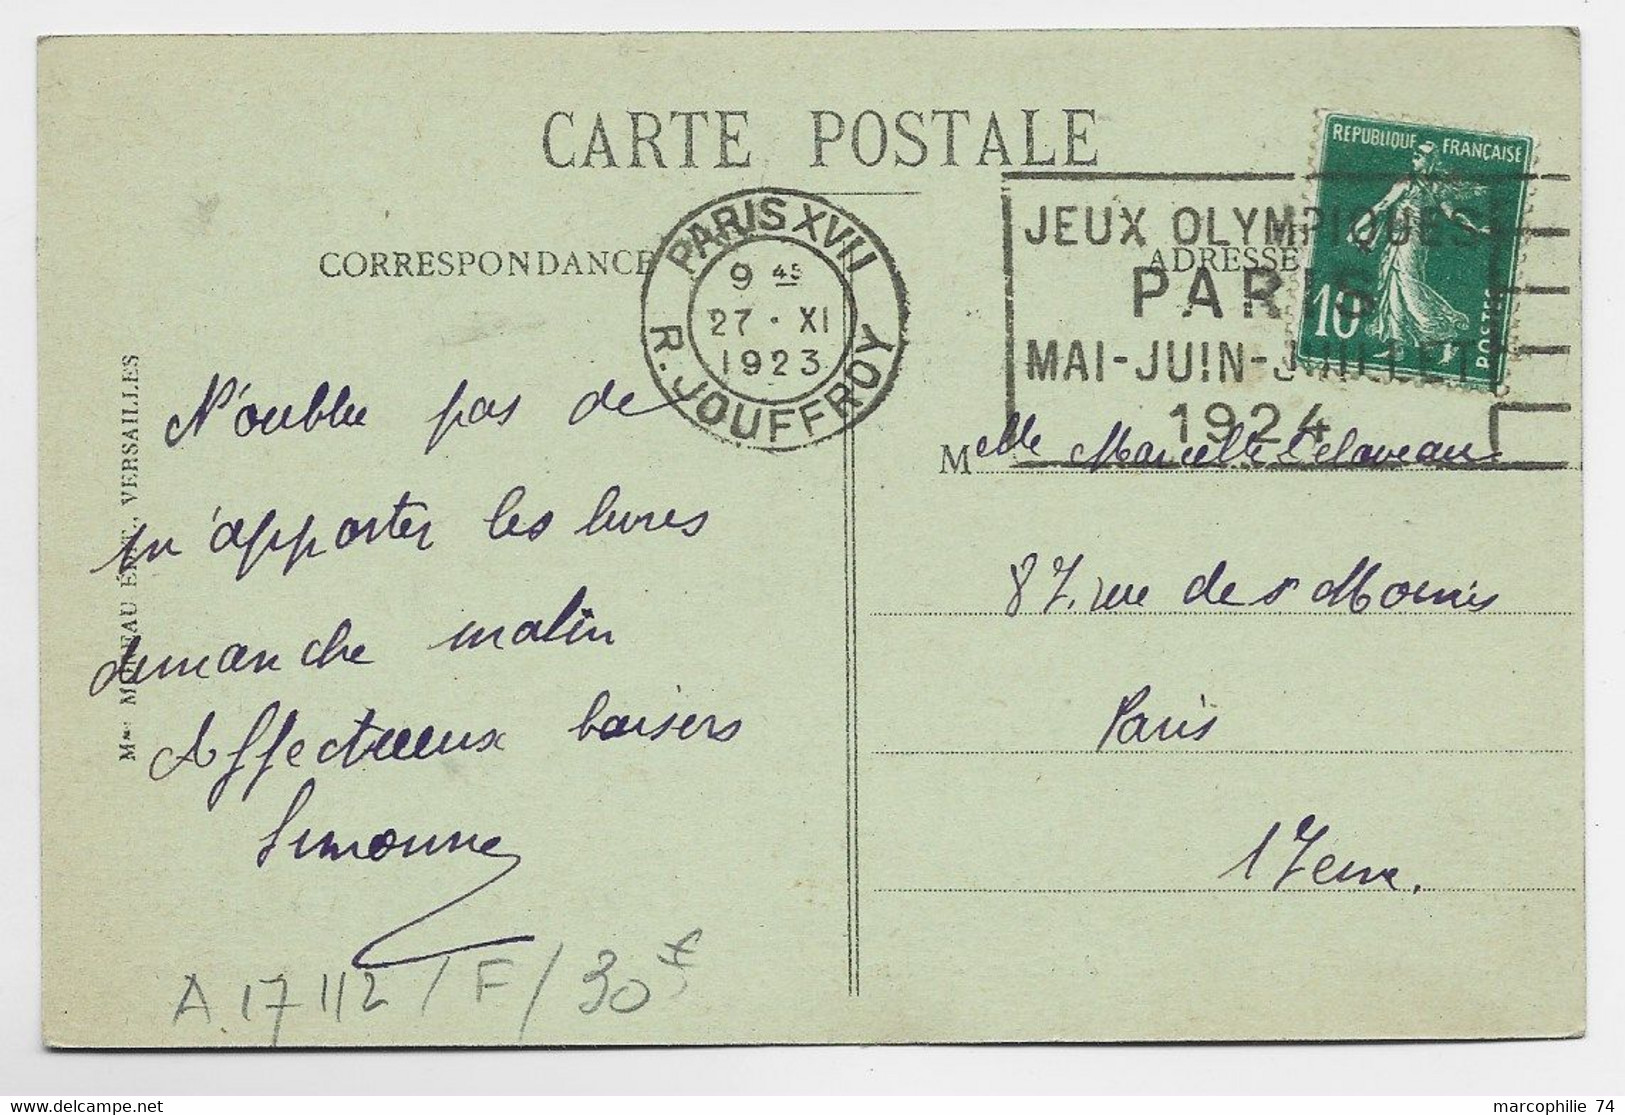 FRANCE SEMEUSE 10C CARTE MEC FLIER JEUX OLYMPIQUES PARIS R JOUFFROY 27.XI.1923 COTE 30€ - Estate 1924: Paris